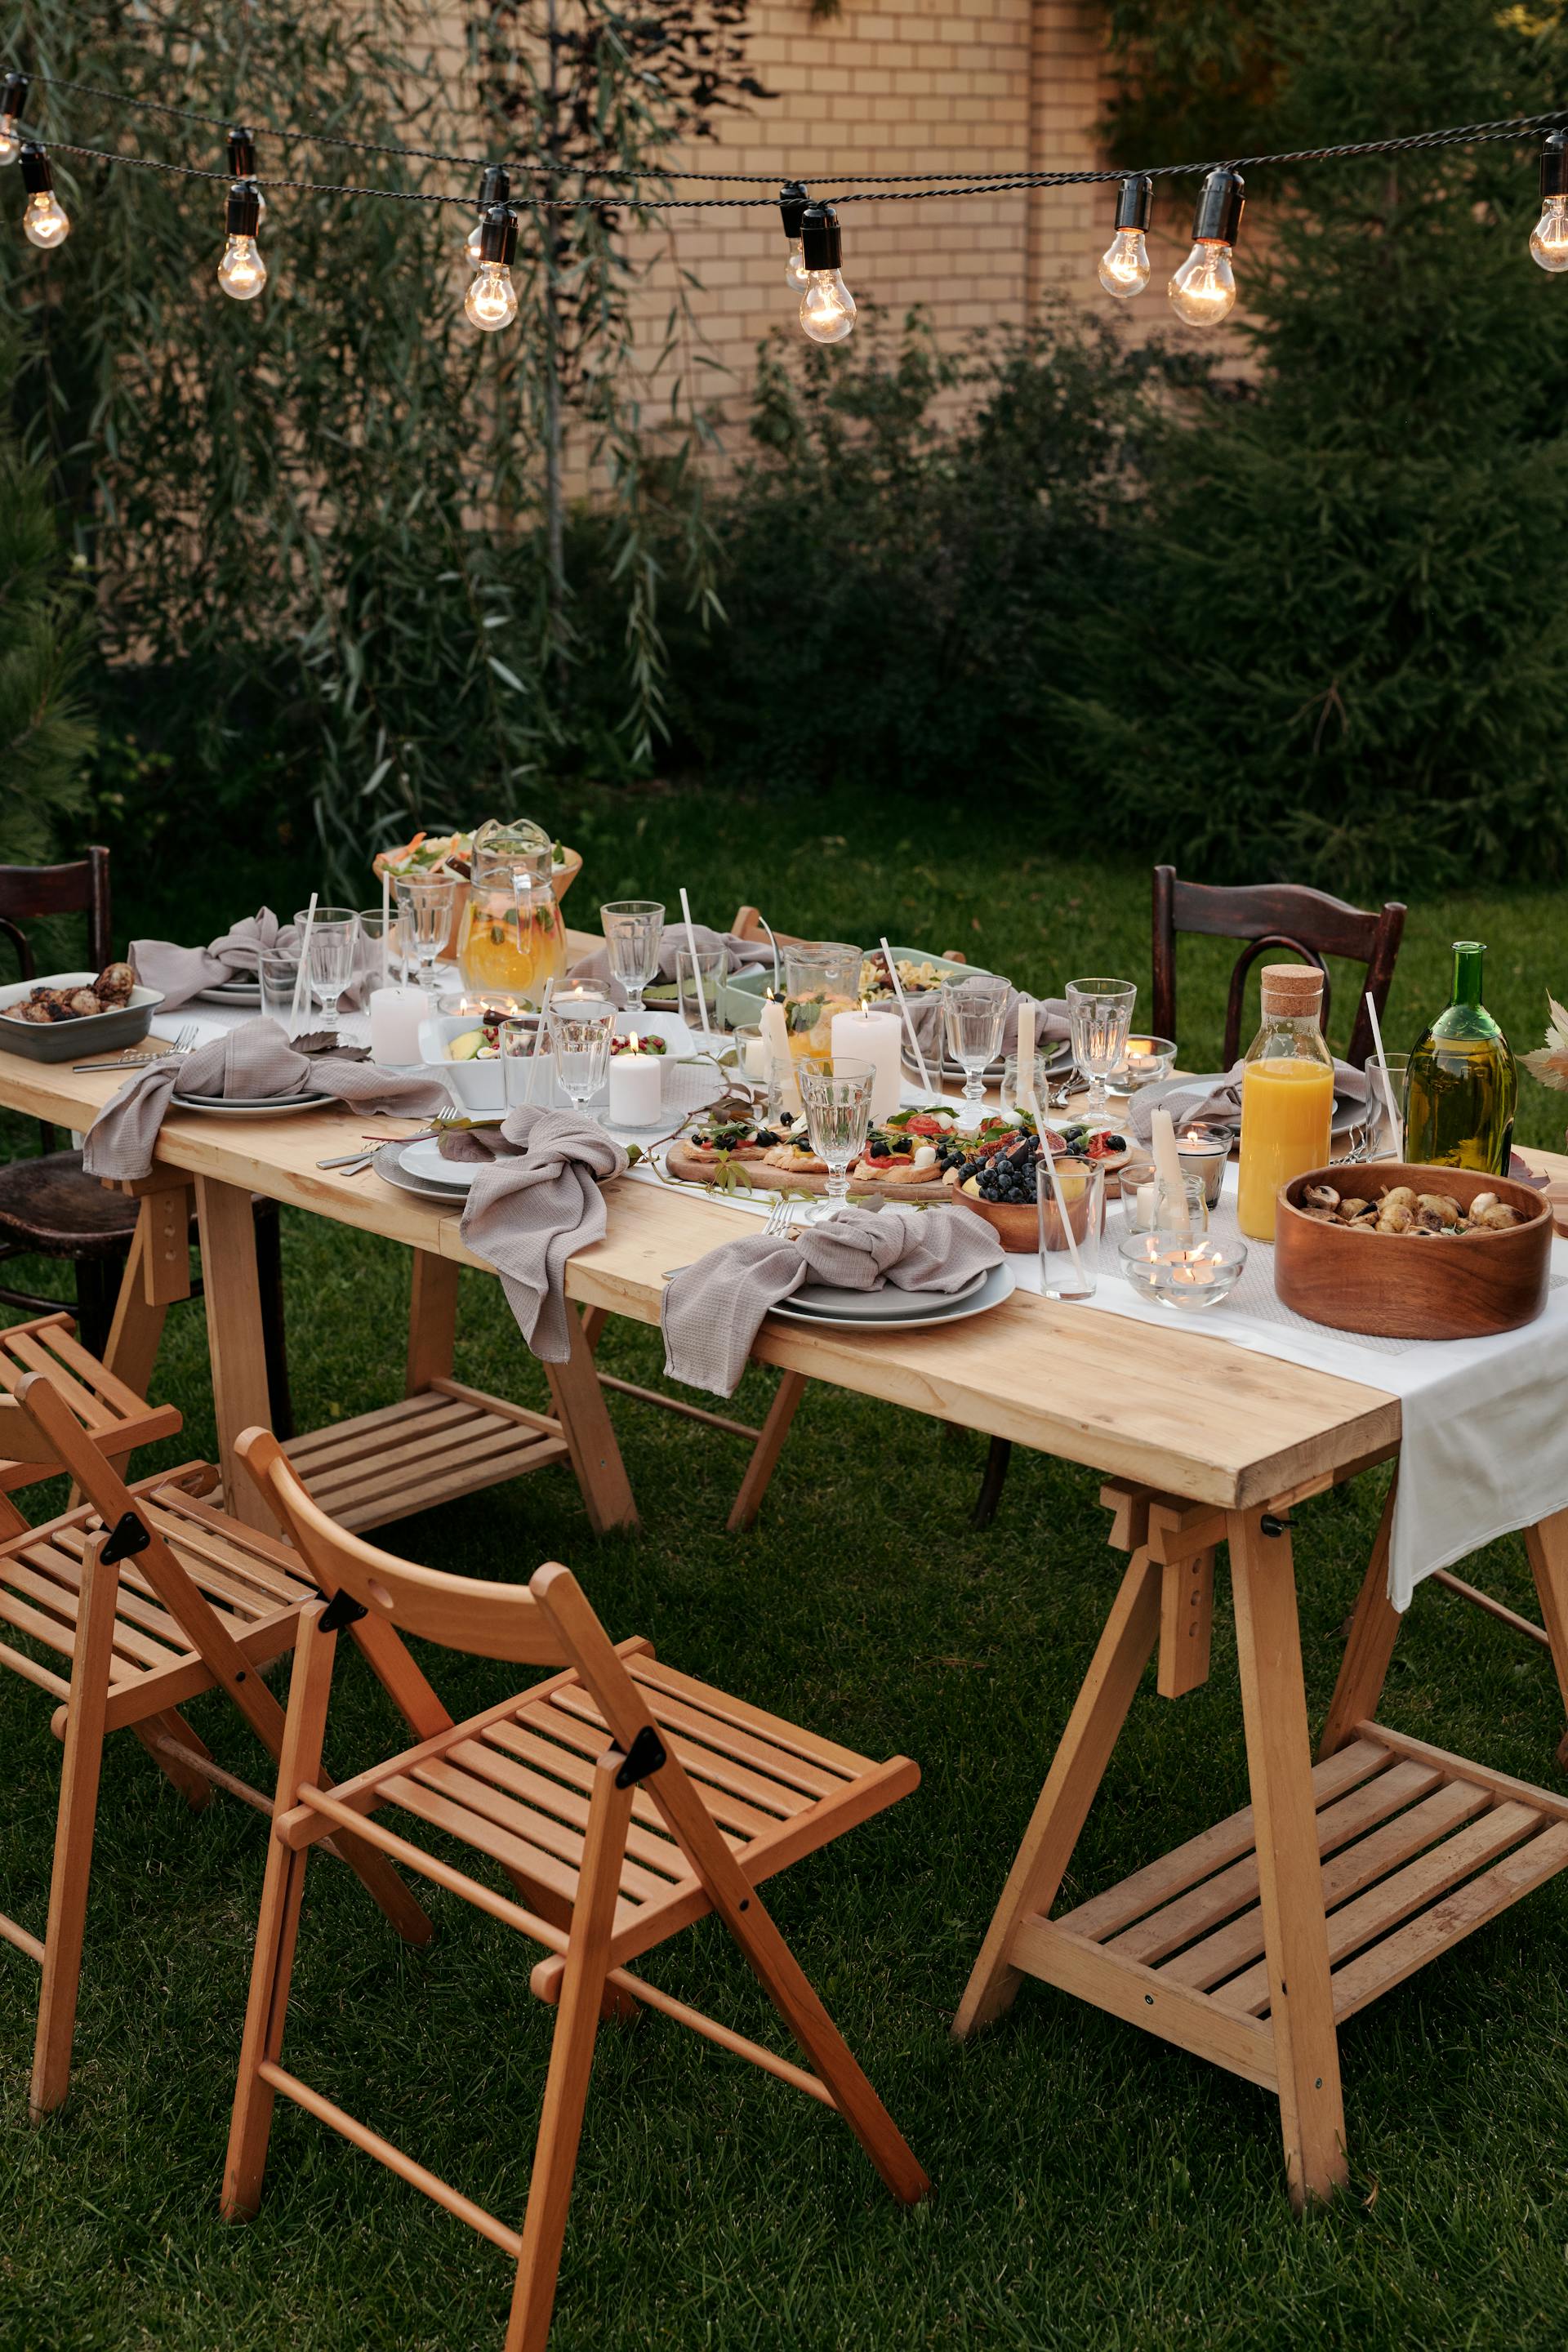 Das Essen wird auf einem braunen Holztisch mit Stühlen und Tellern serviert | Quelle: Pexels